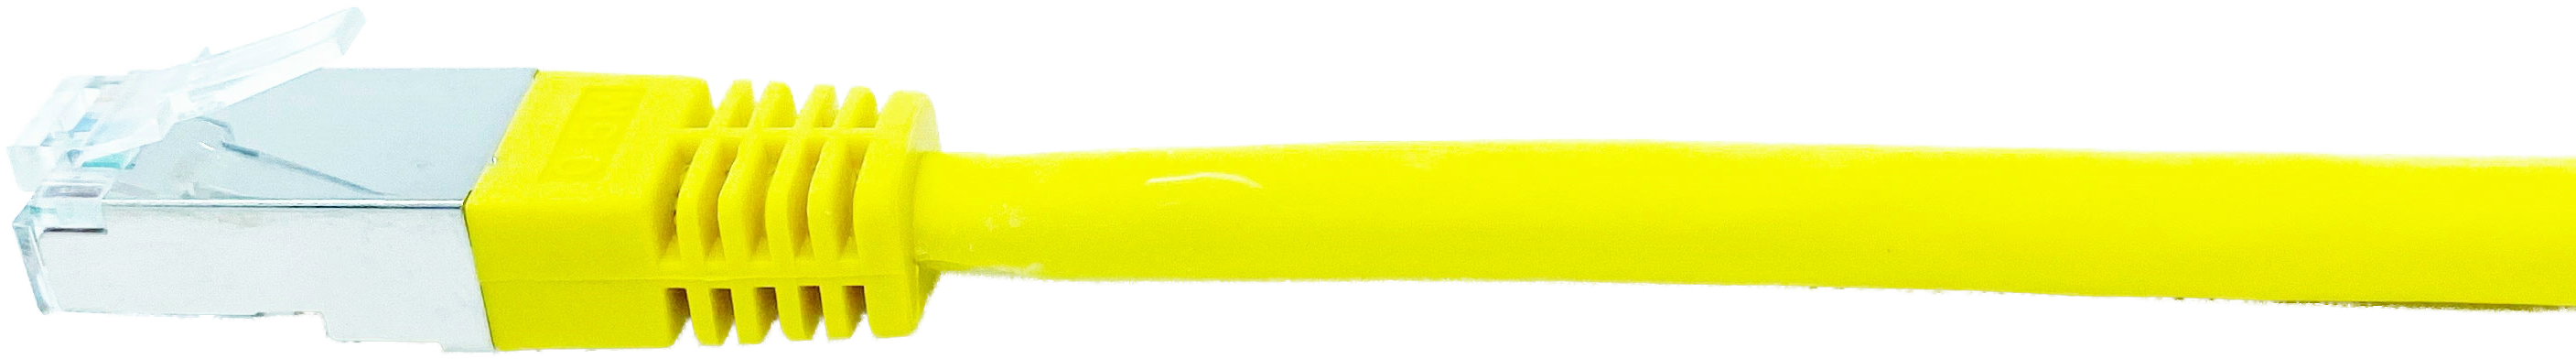 Kupferpatchkabel Cat.6 250MHz 15,0m gelb